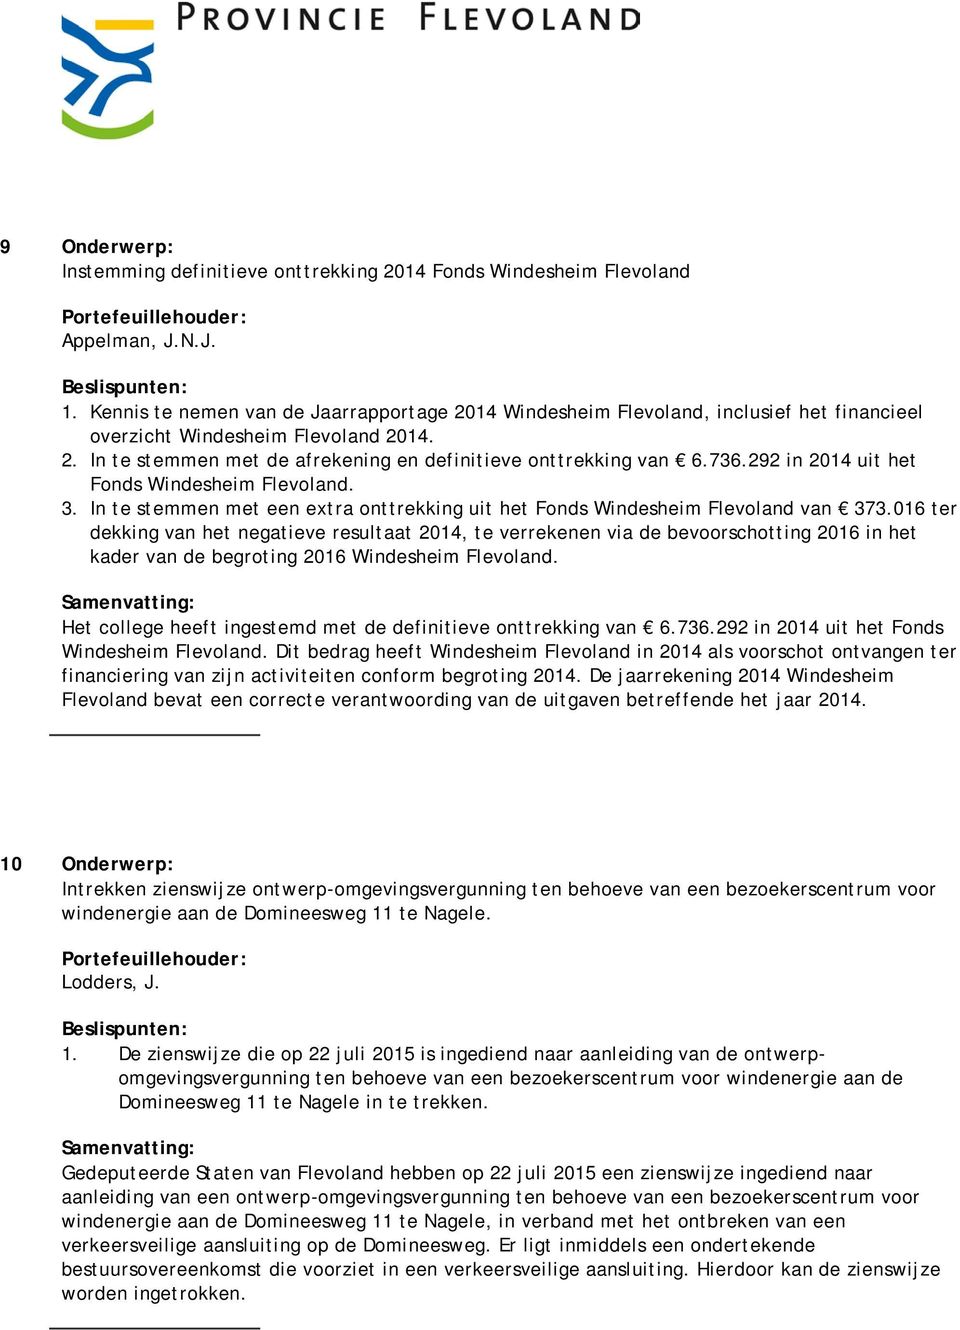 292 in 2014 uit het Fonds Windesheim Flevoland. 3. In te stemmen met een extra onttrekking uit het Fonds Windesheim Flevoland van 373.